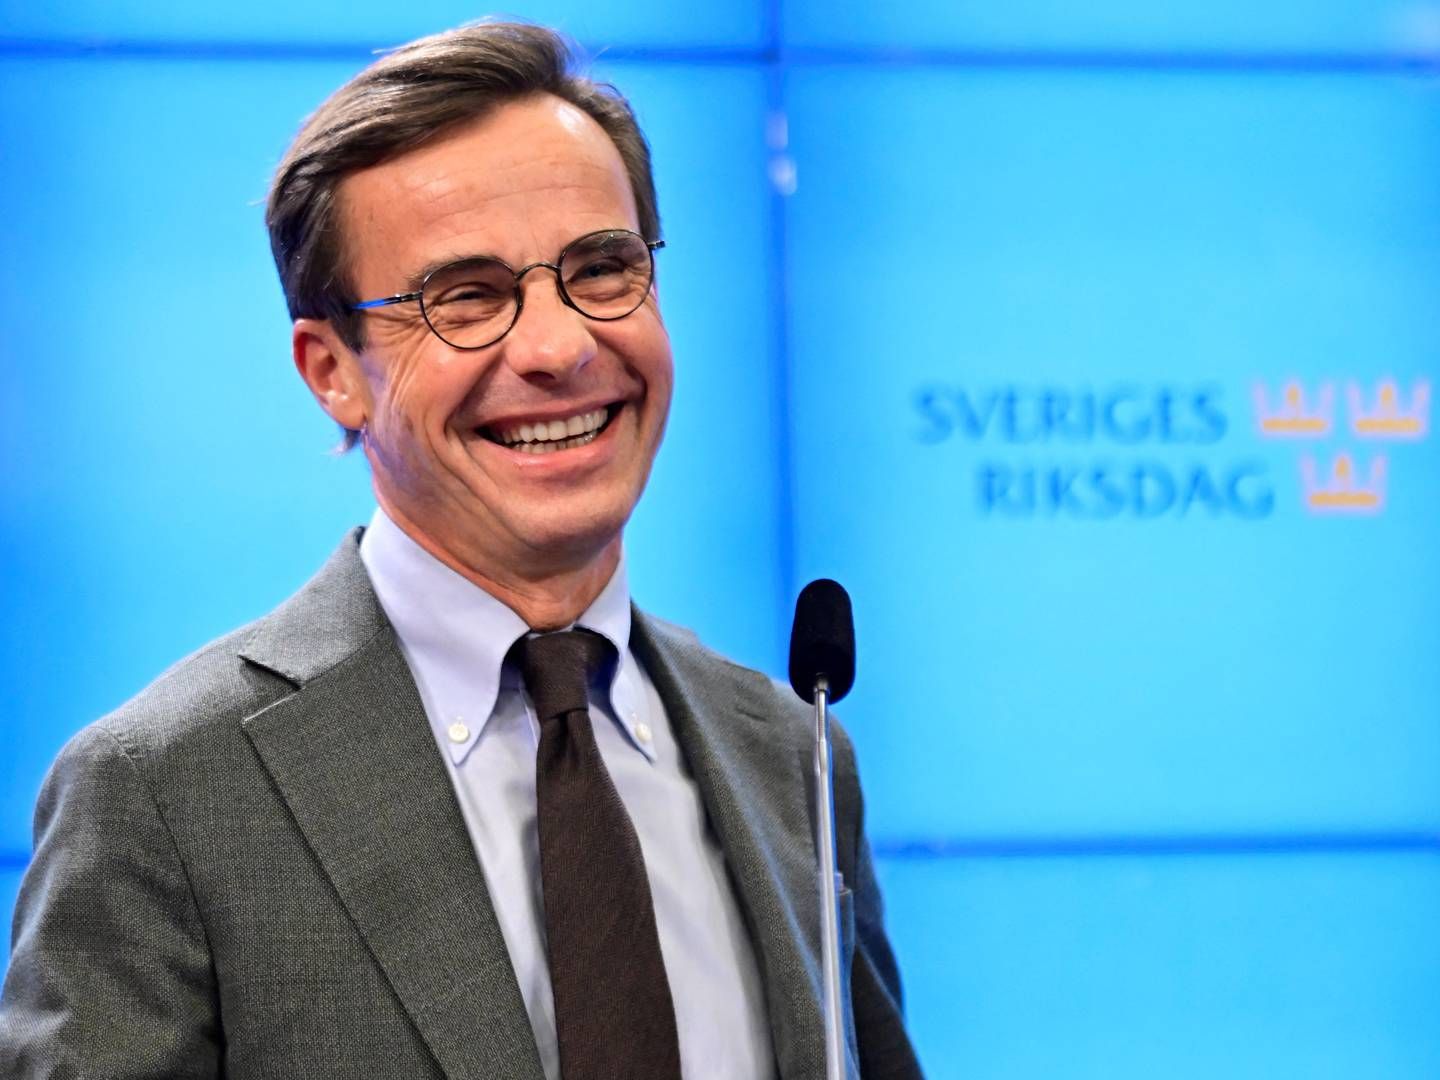 Ulf Kristersson kommer til at overtage statsministerposten fra socialdemokratiske Magdalena Andersson. | Foto: TT NEWS AGENCY/VIA REUTERS / X02350